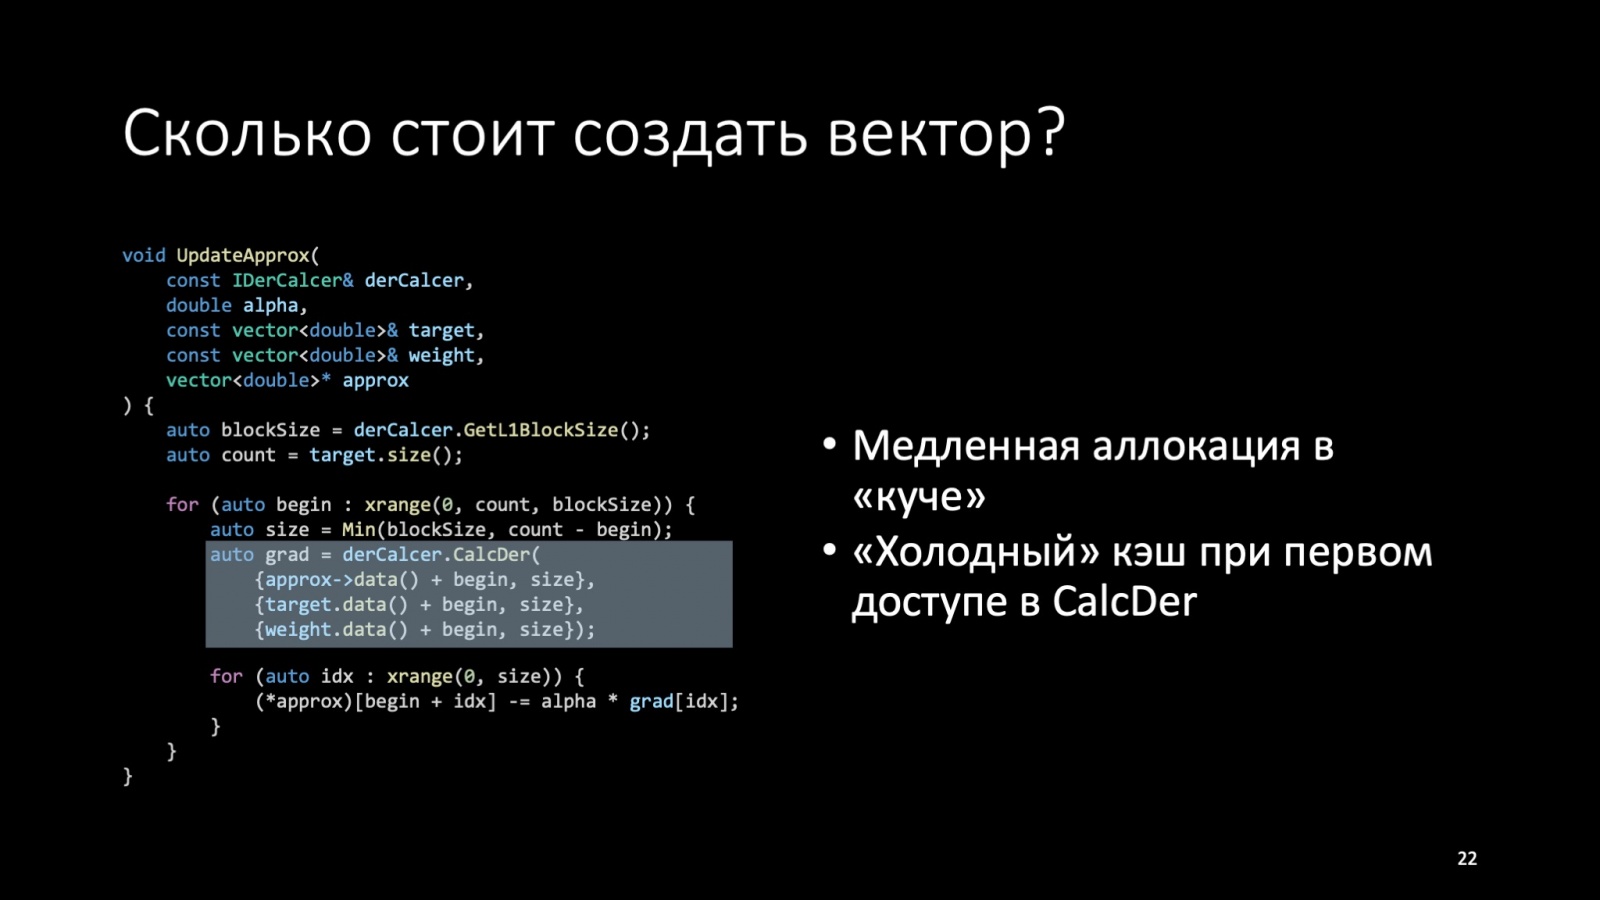 Оптимизация C++: совмещаем скорость и высокий уровень. Доклад Яндекса - 22